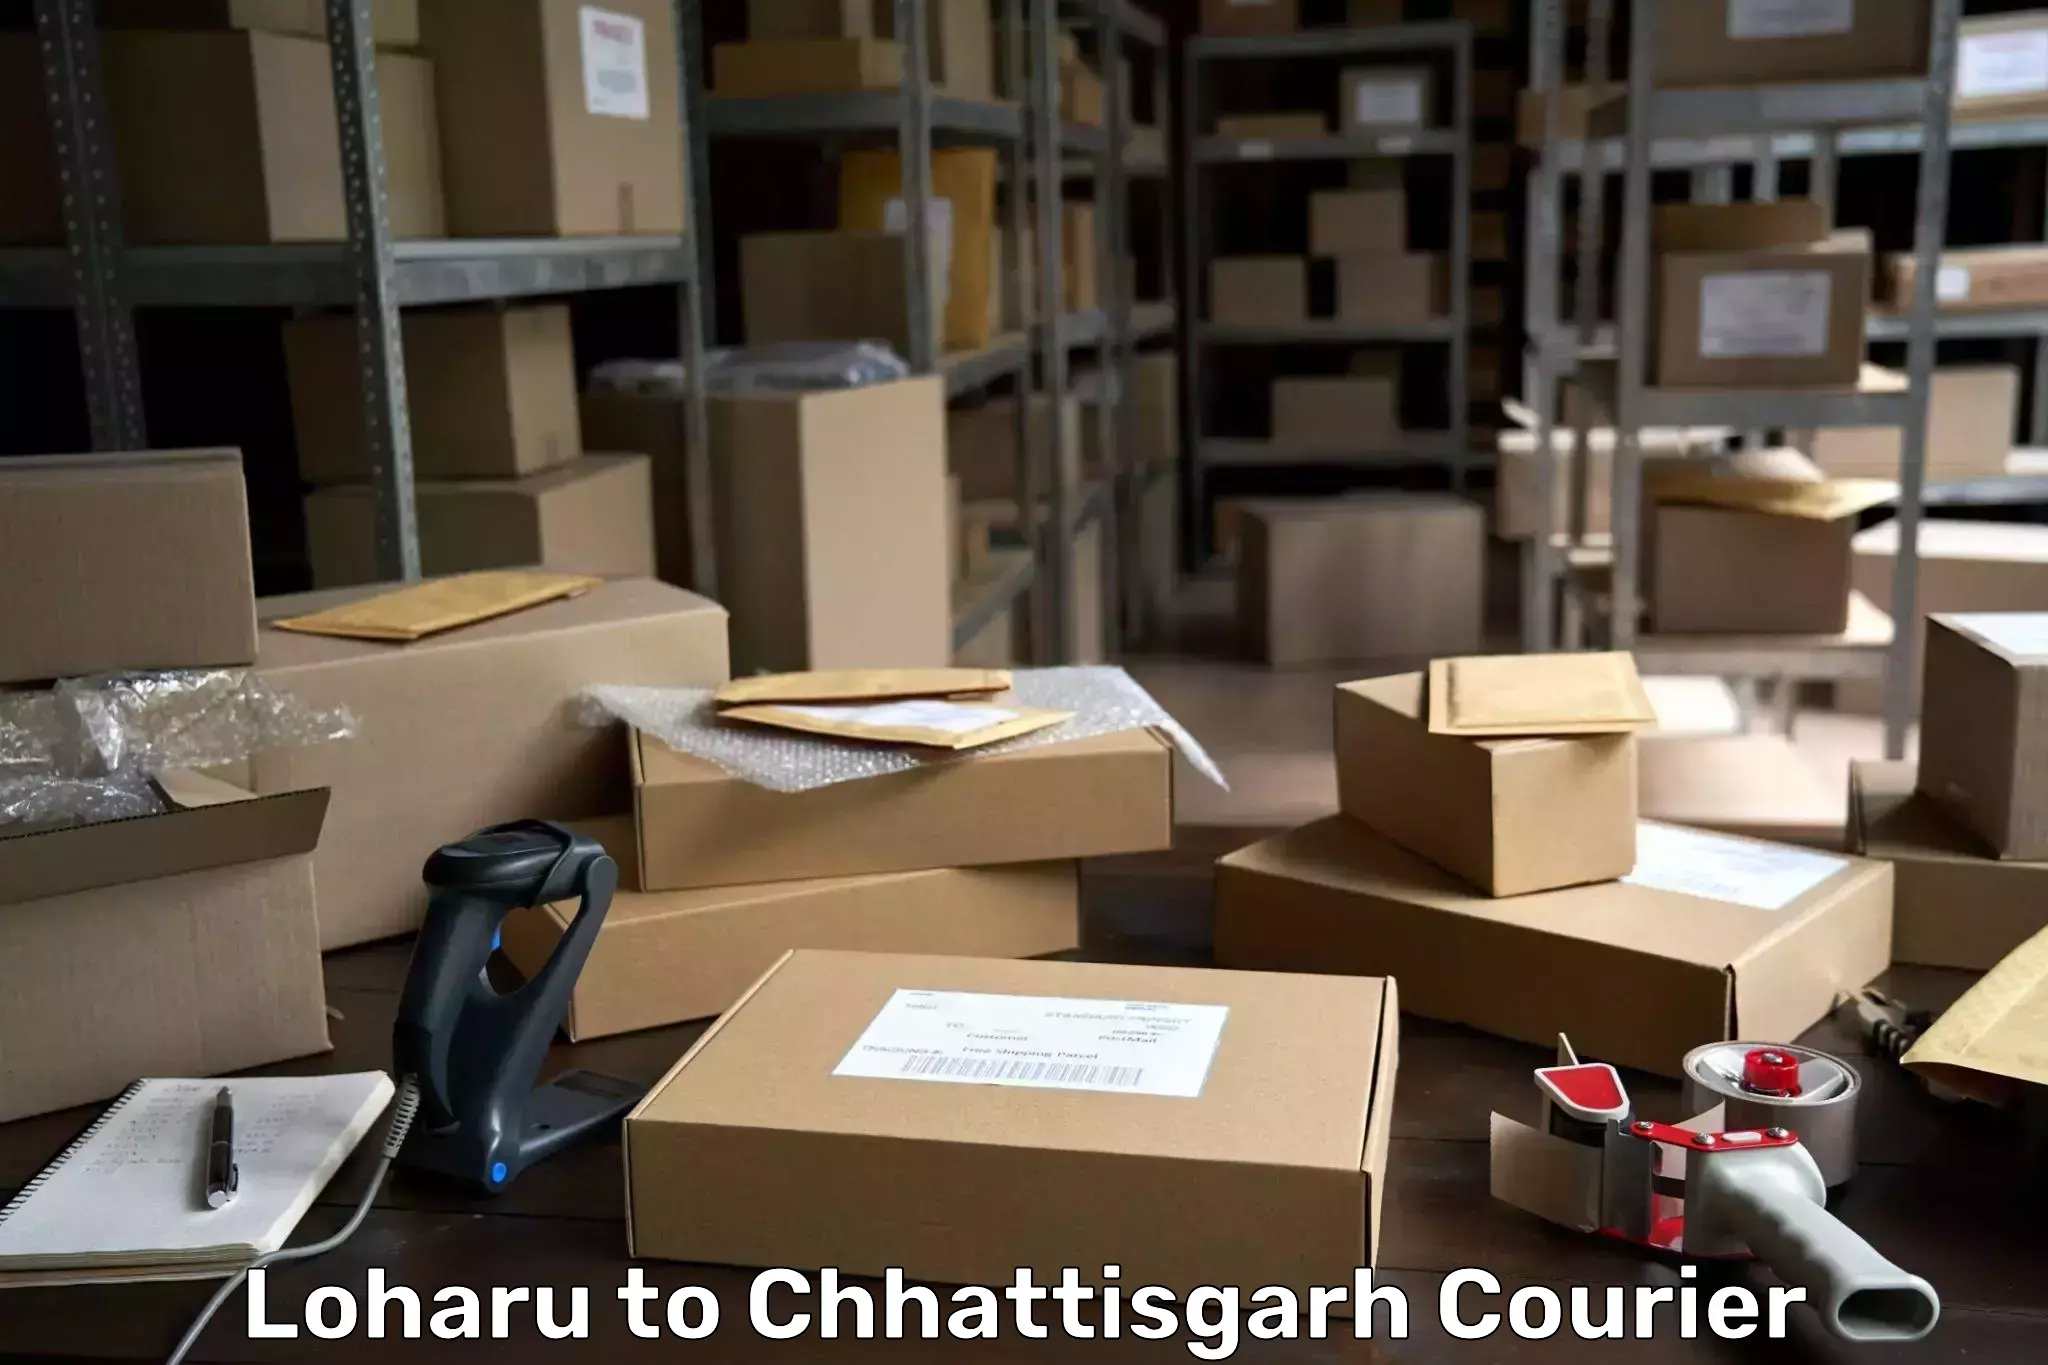 Courier service comparison in Loharu to Chhattisgarh